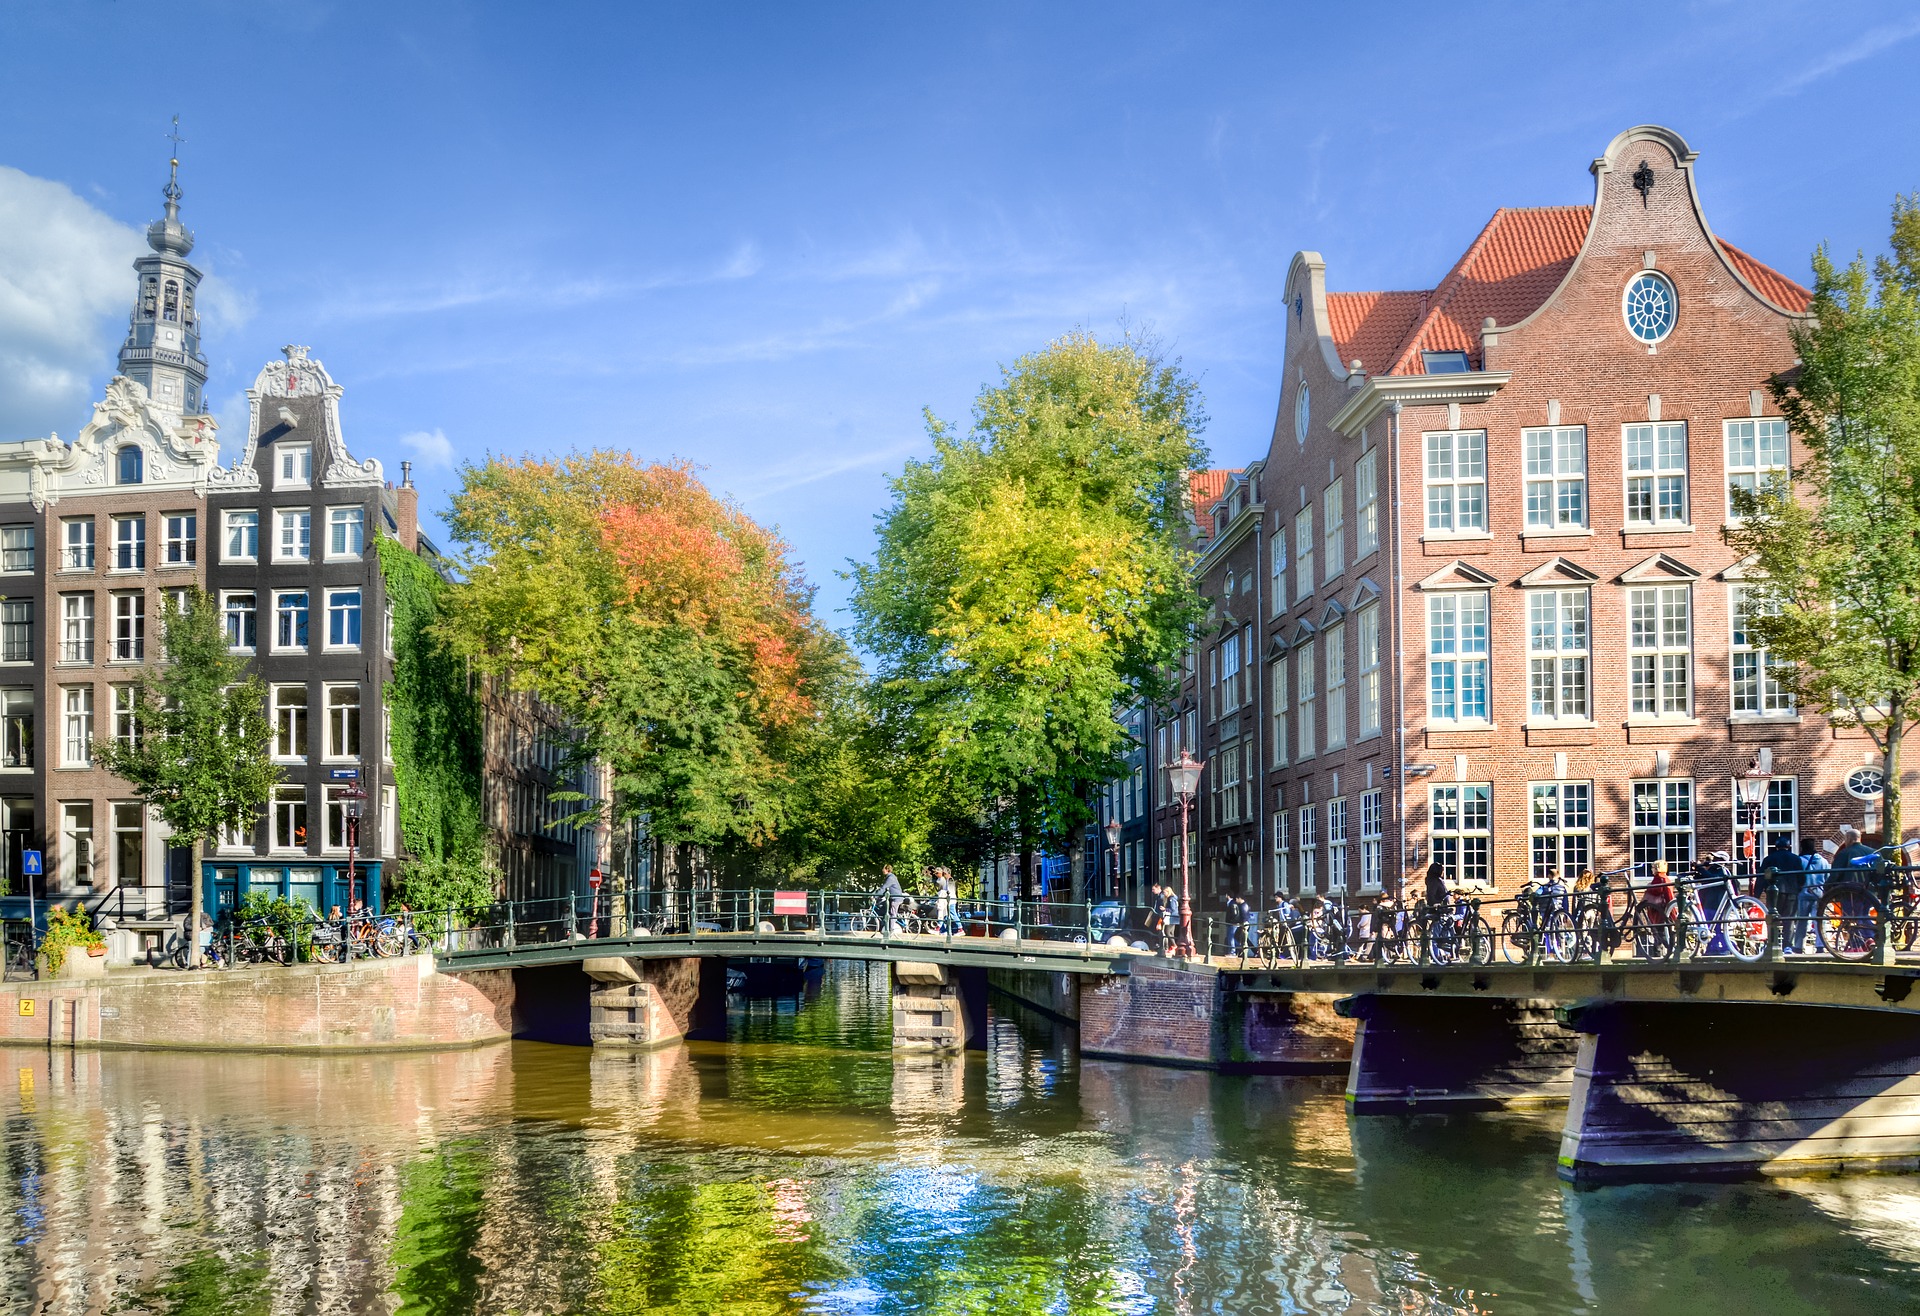 31 Amsterdam Practices meet H4i criteria